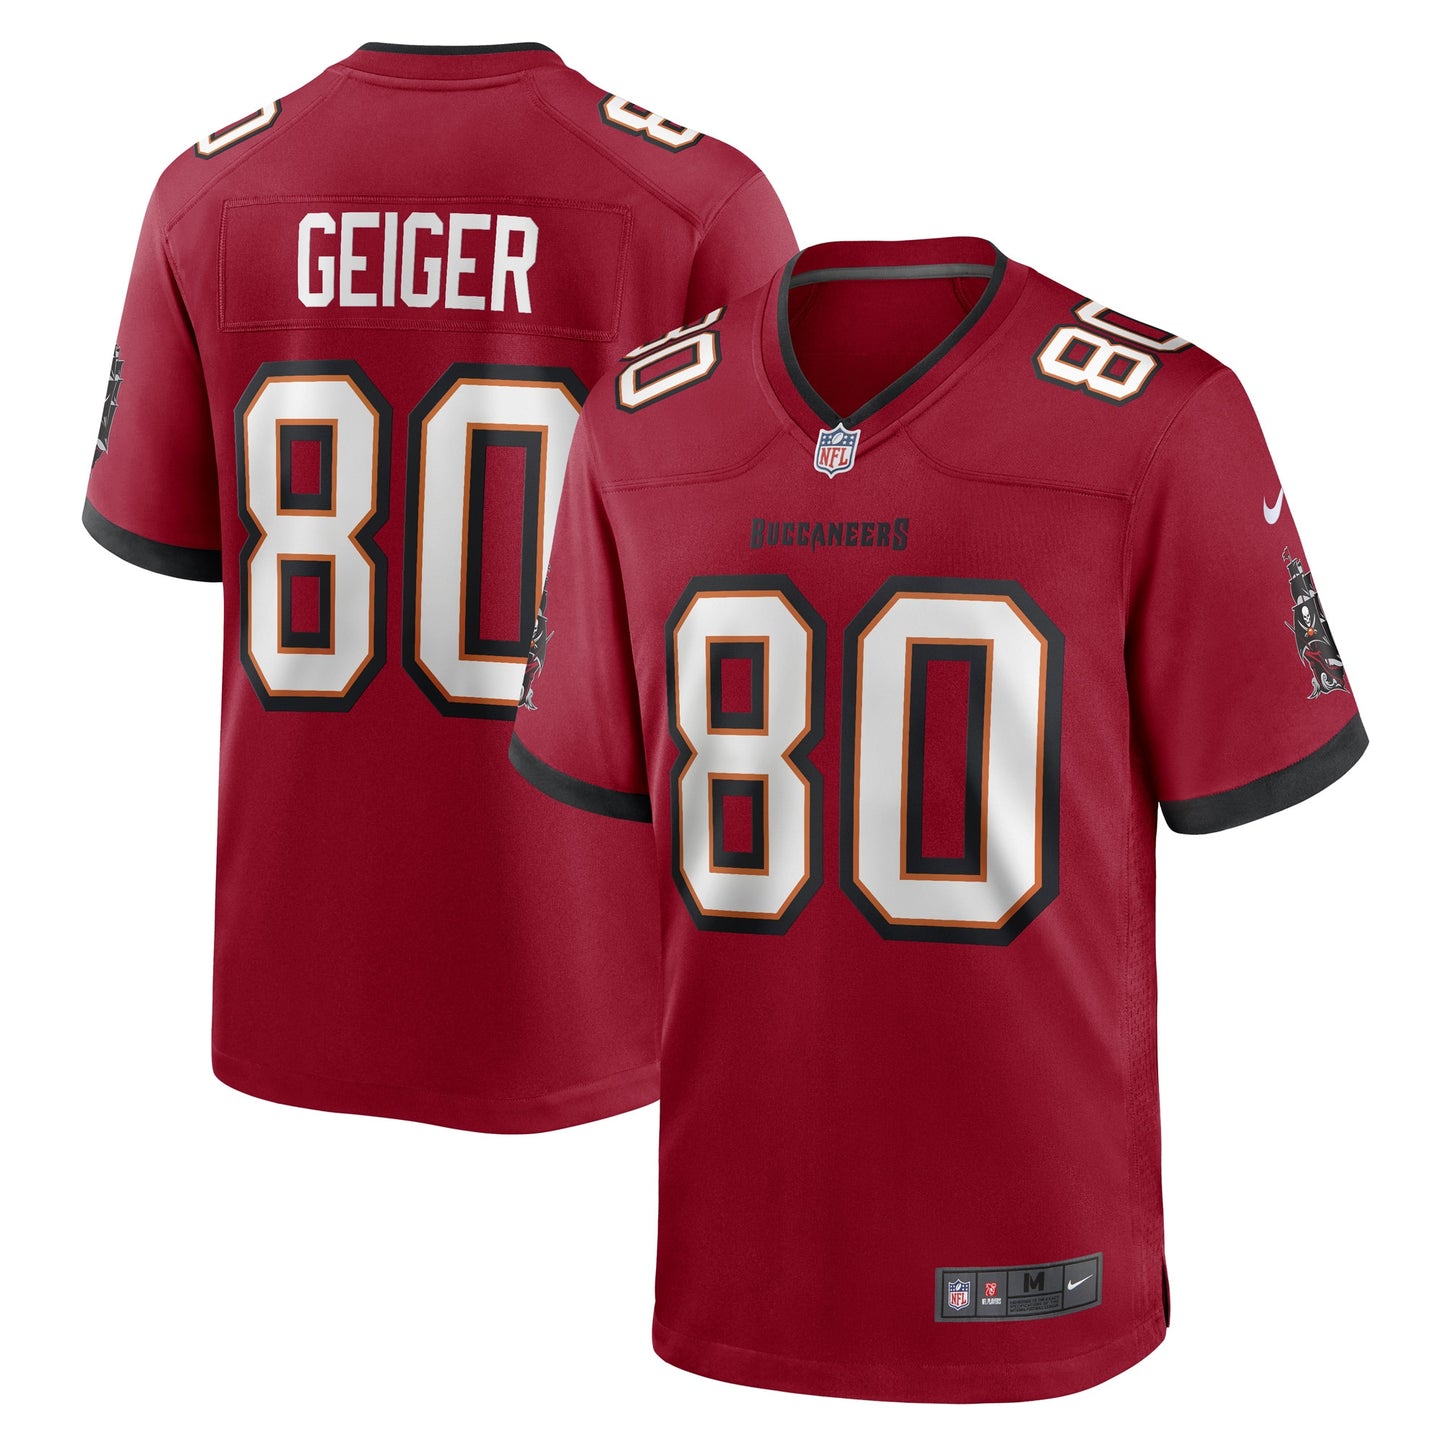 Kaylon Geiger Tampa Bay Buccaneers Nike Game Player Jersey - Red